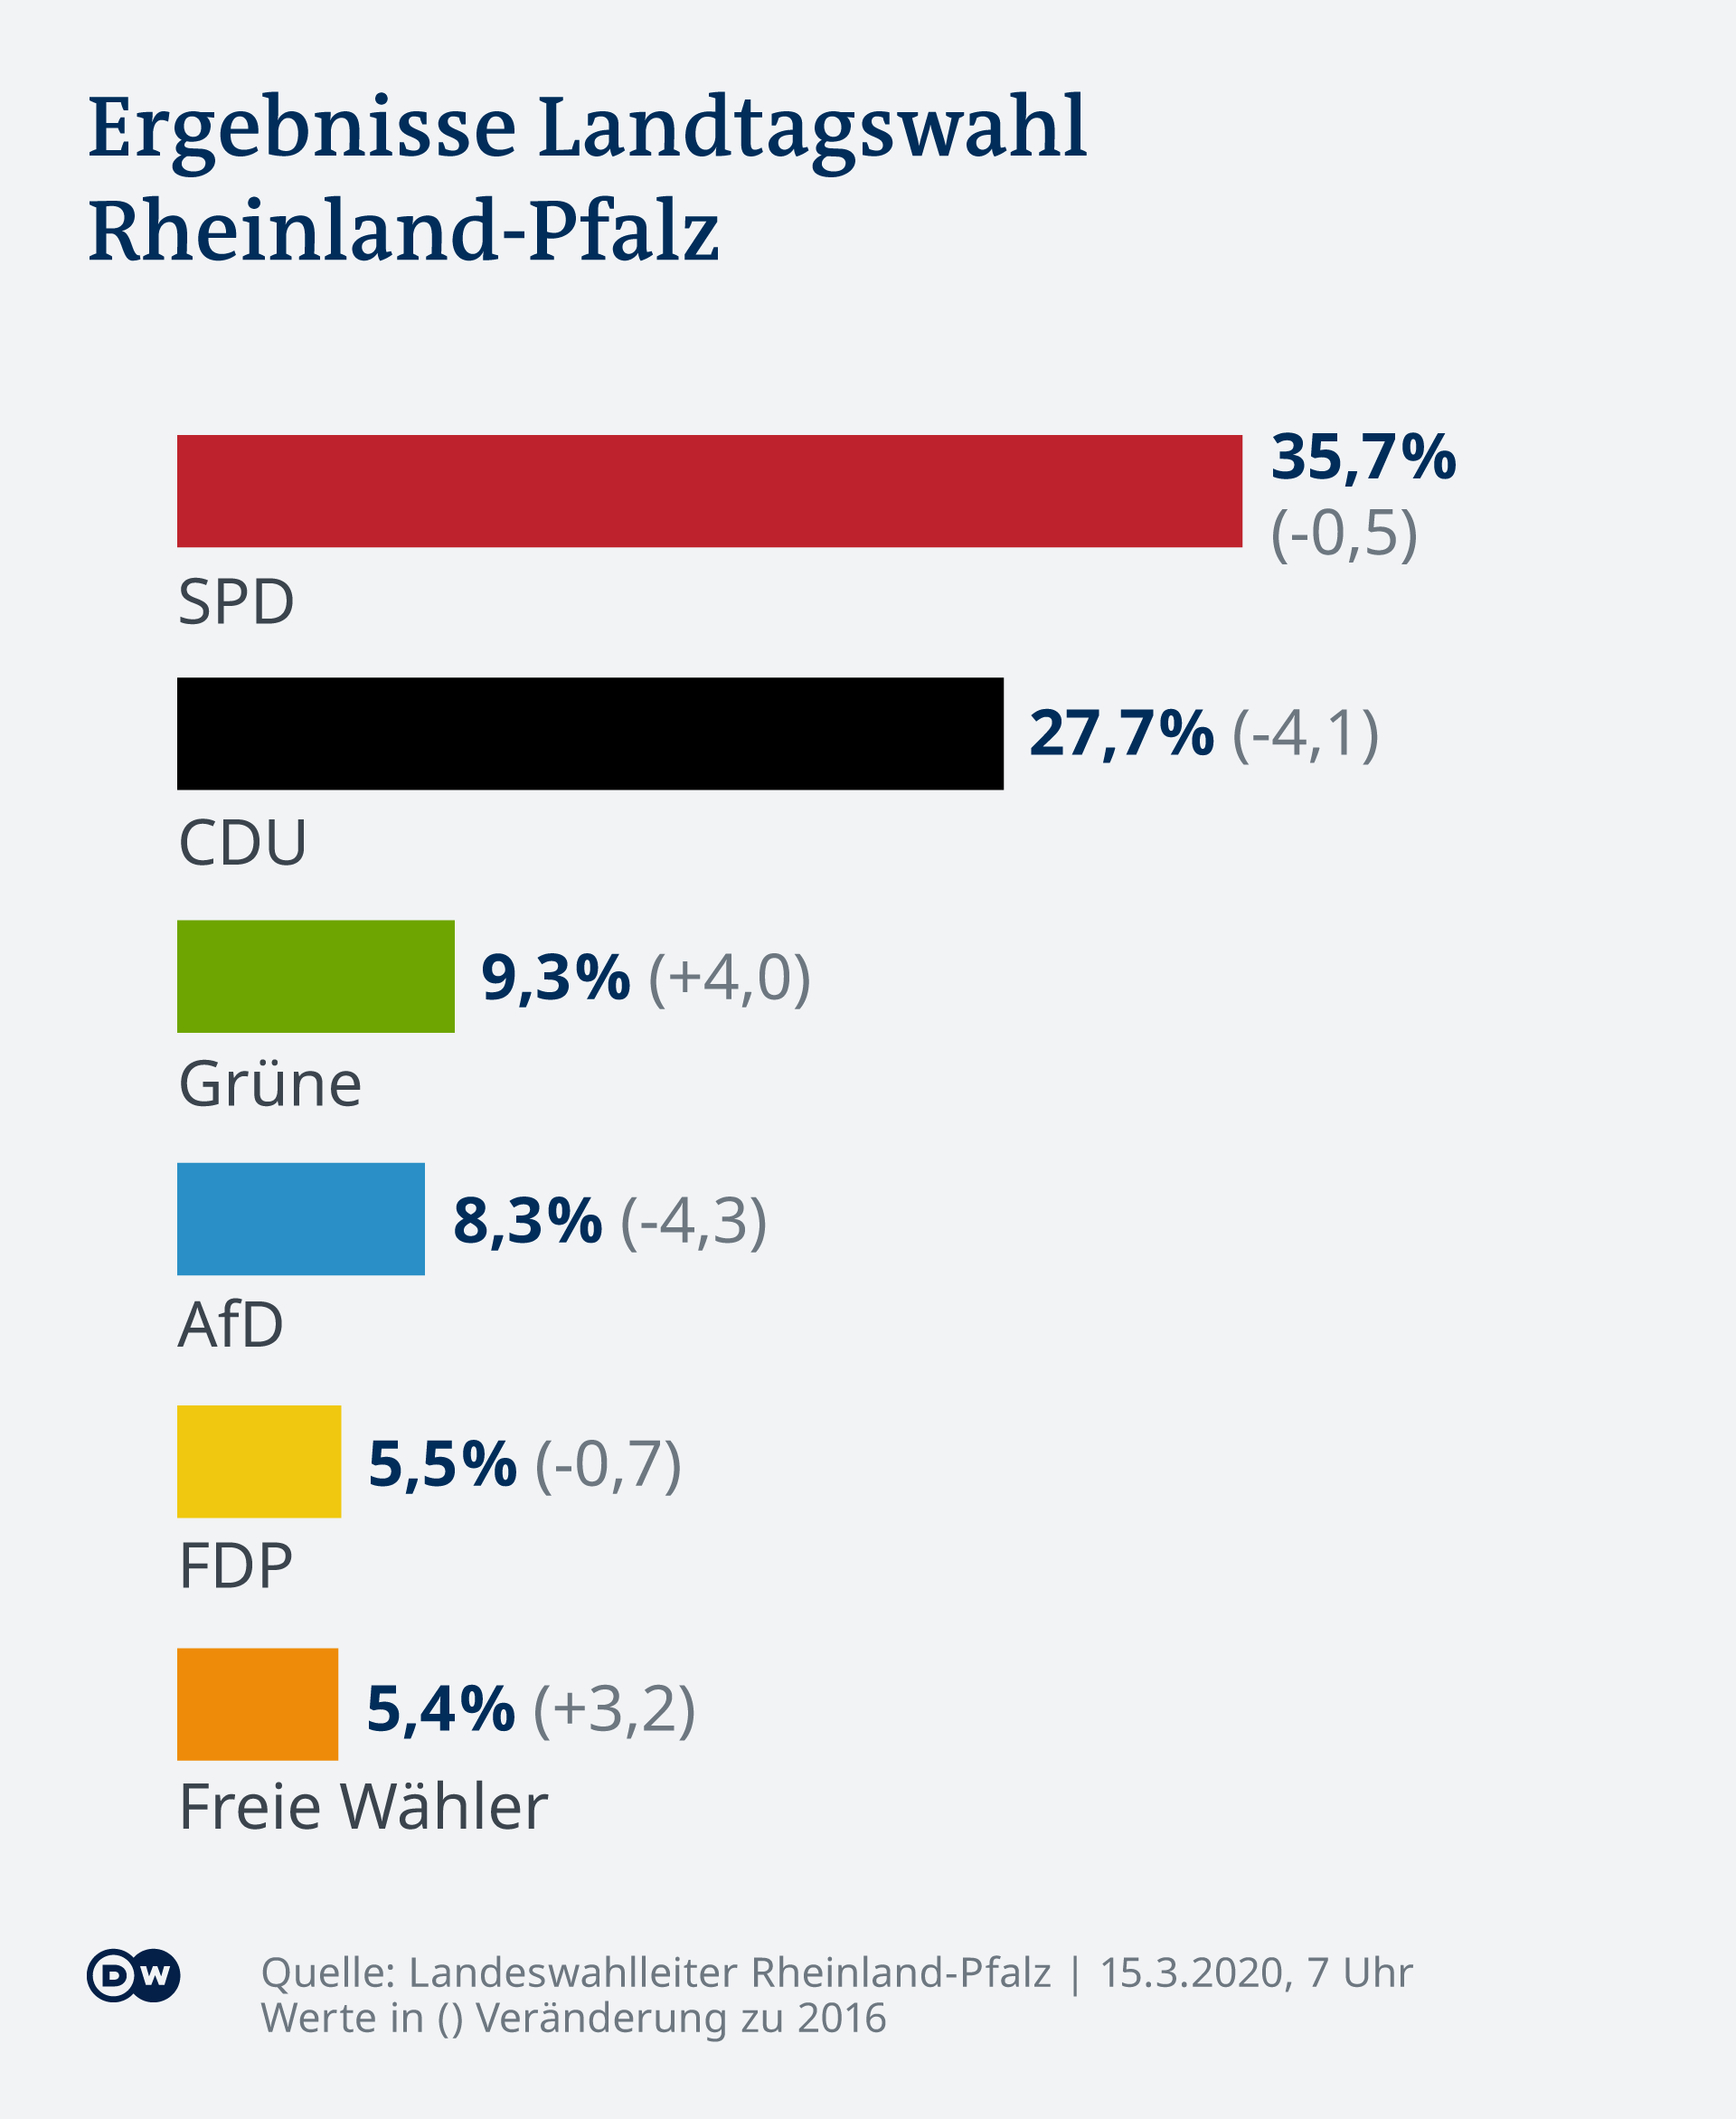 Les résutats en Rhénanie-Palatinat 2021 (entre parenthèses la progression par rapport à 2016)